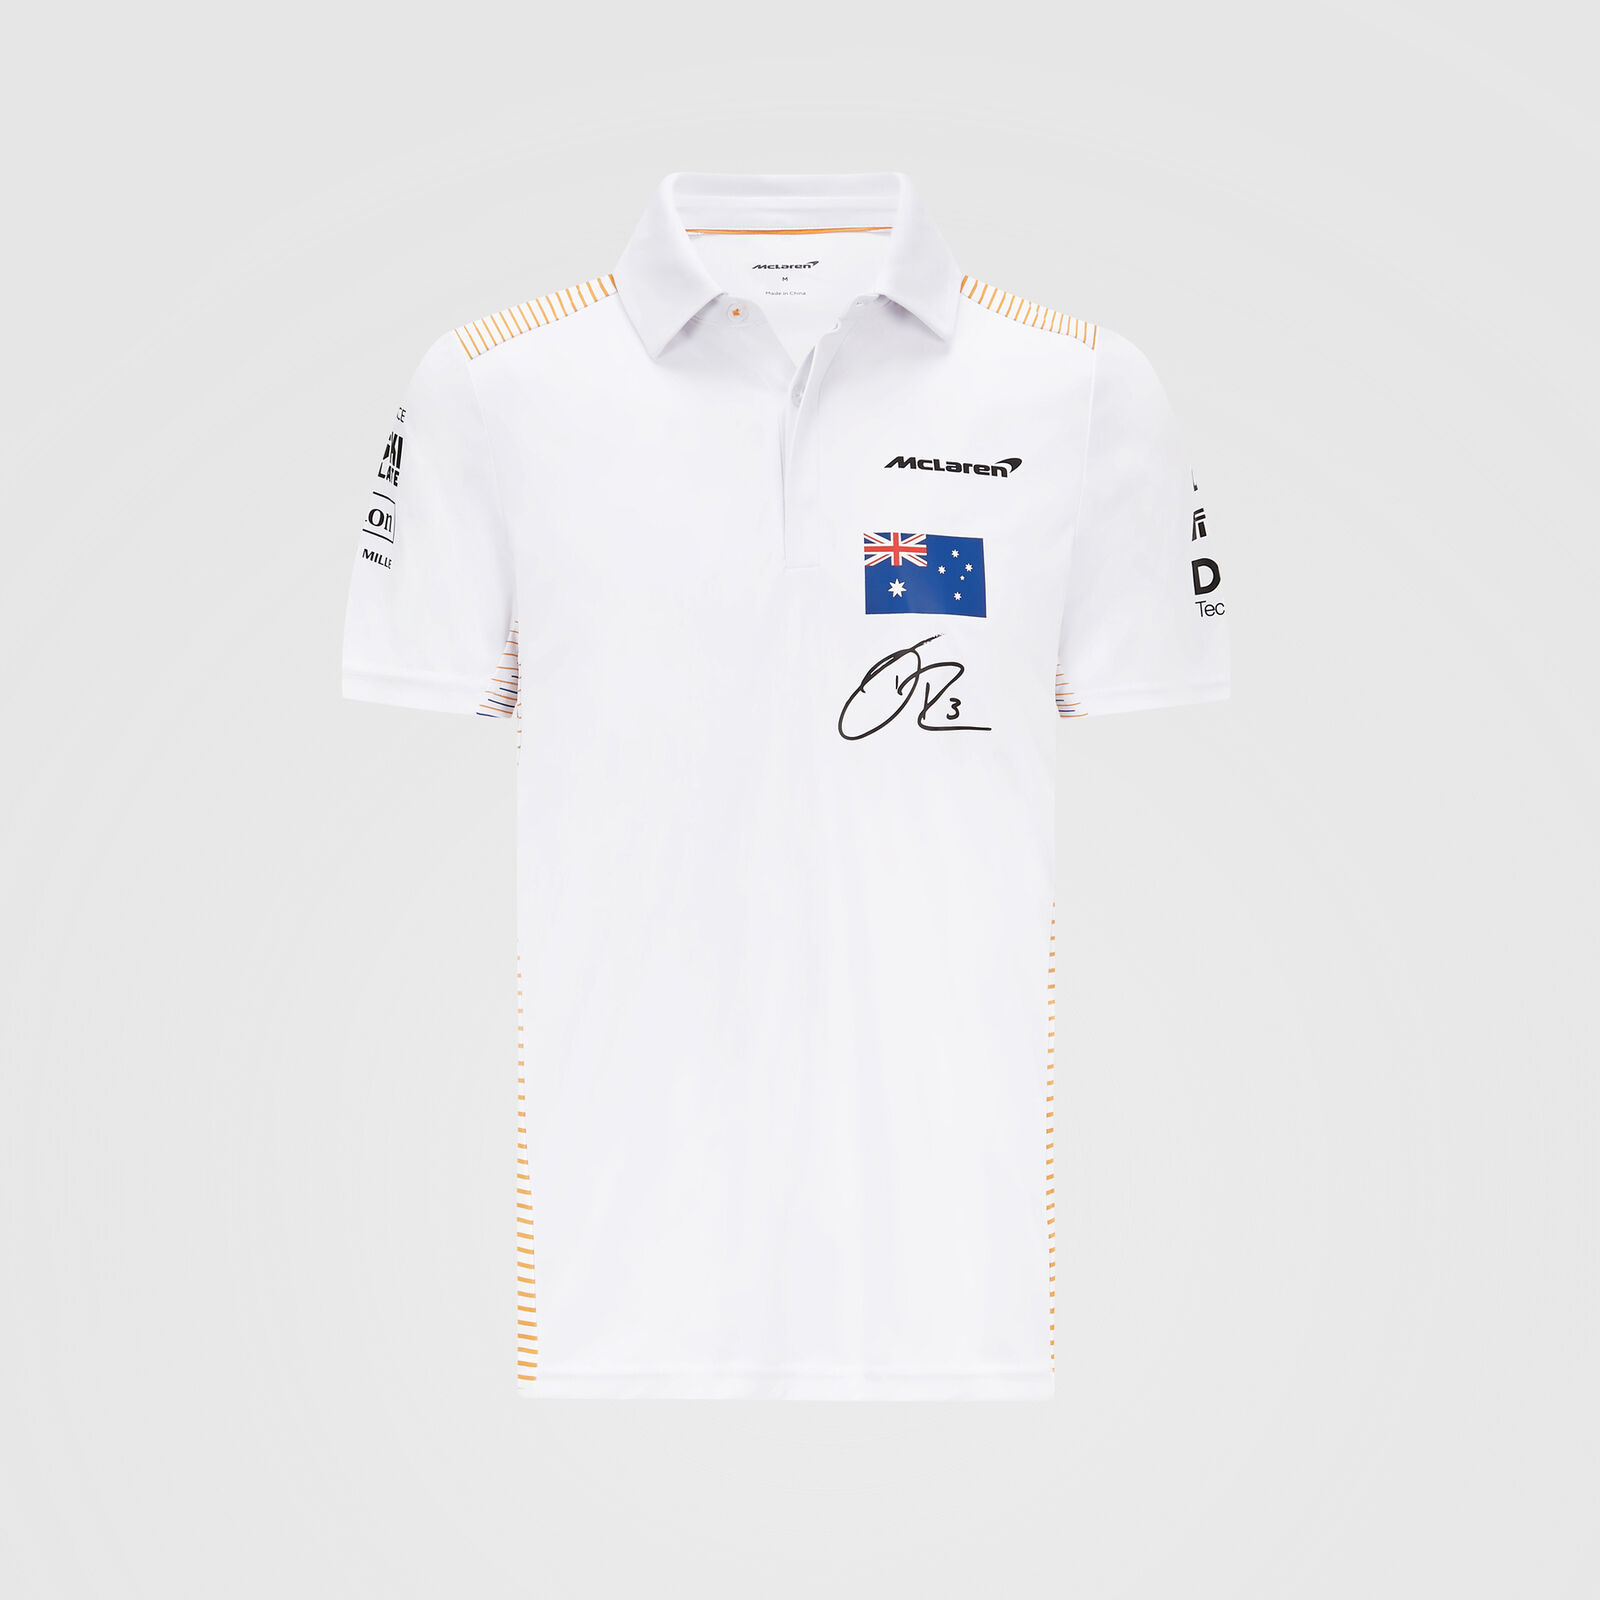 Polo homme McLaren Daniel Ricciardo blanc vue devant avec drapeau australienne et signature